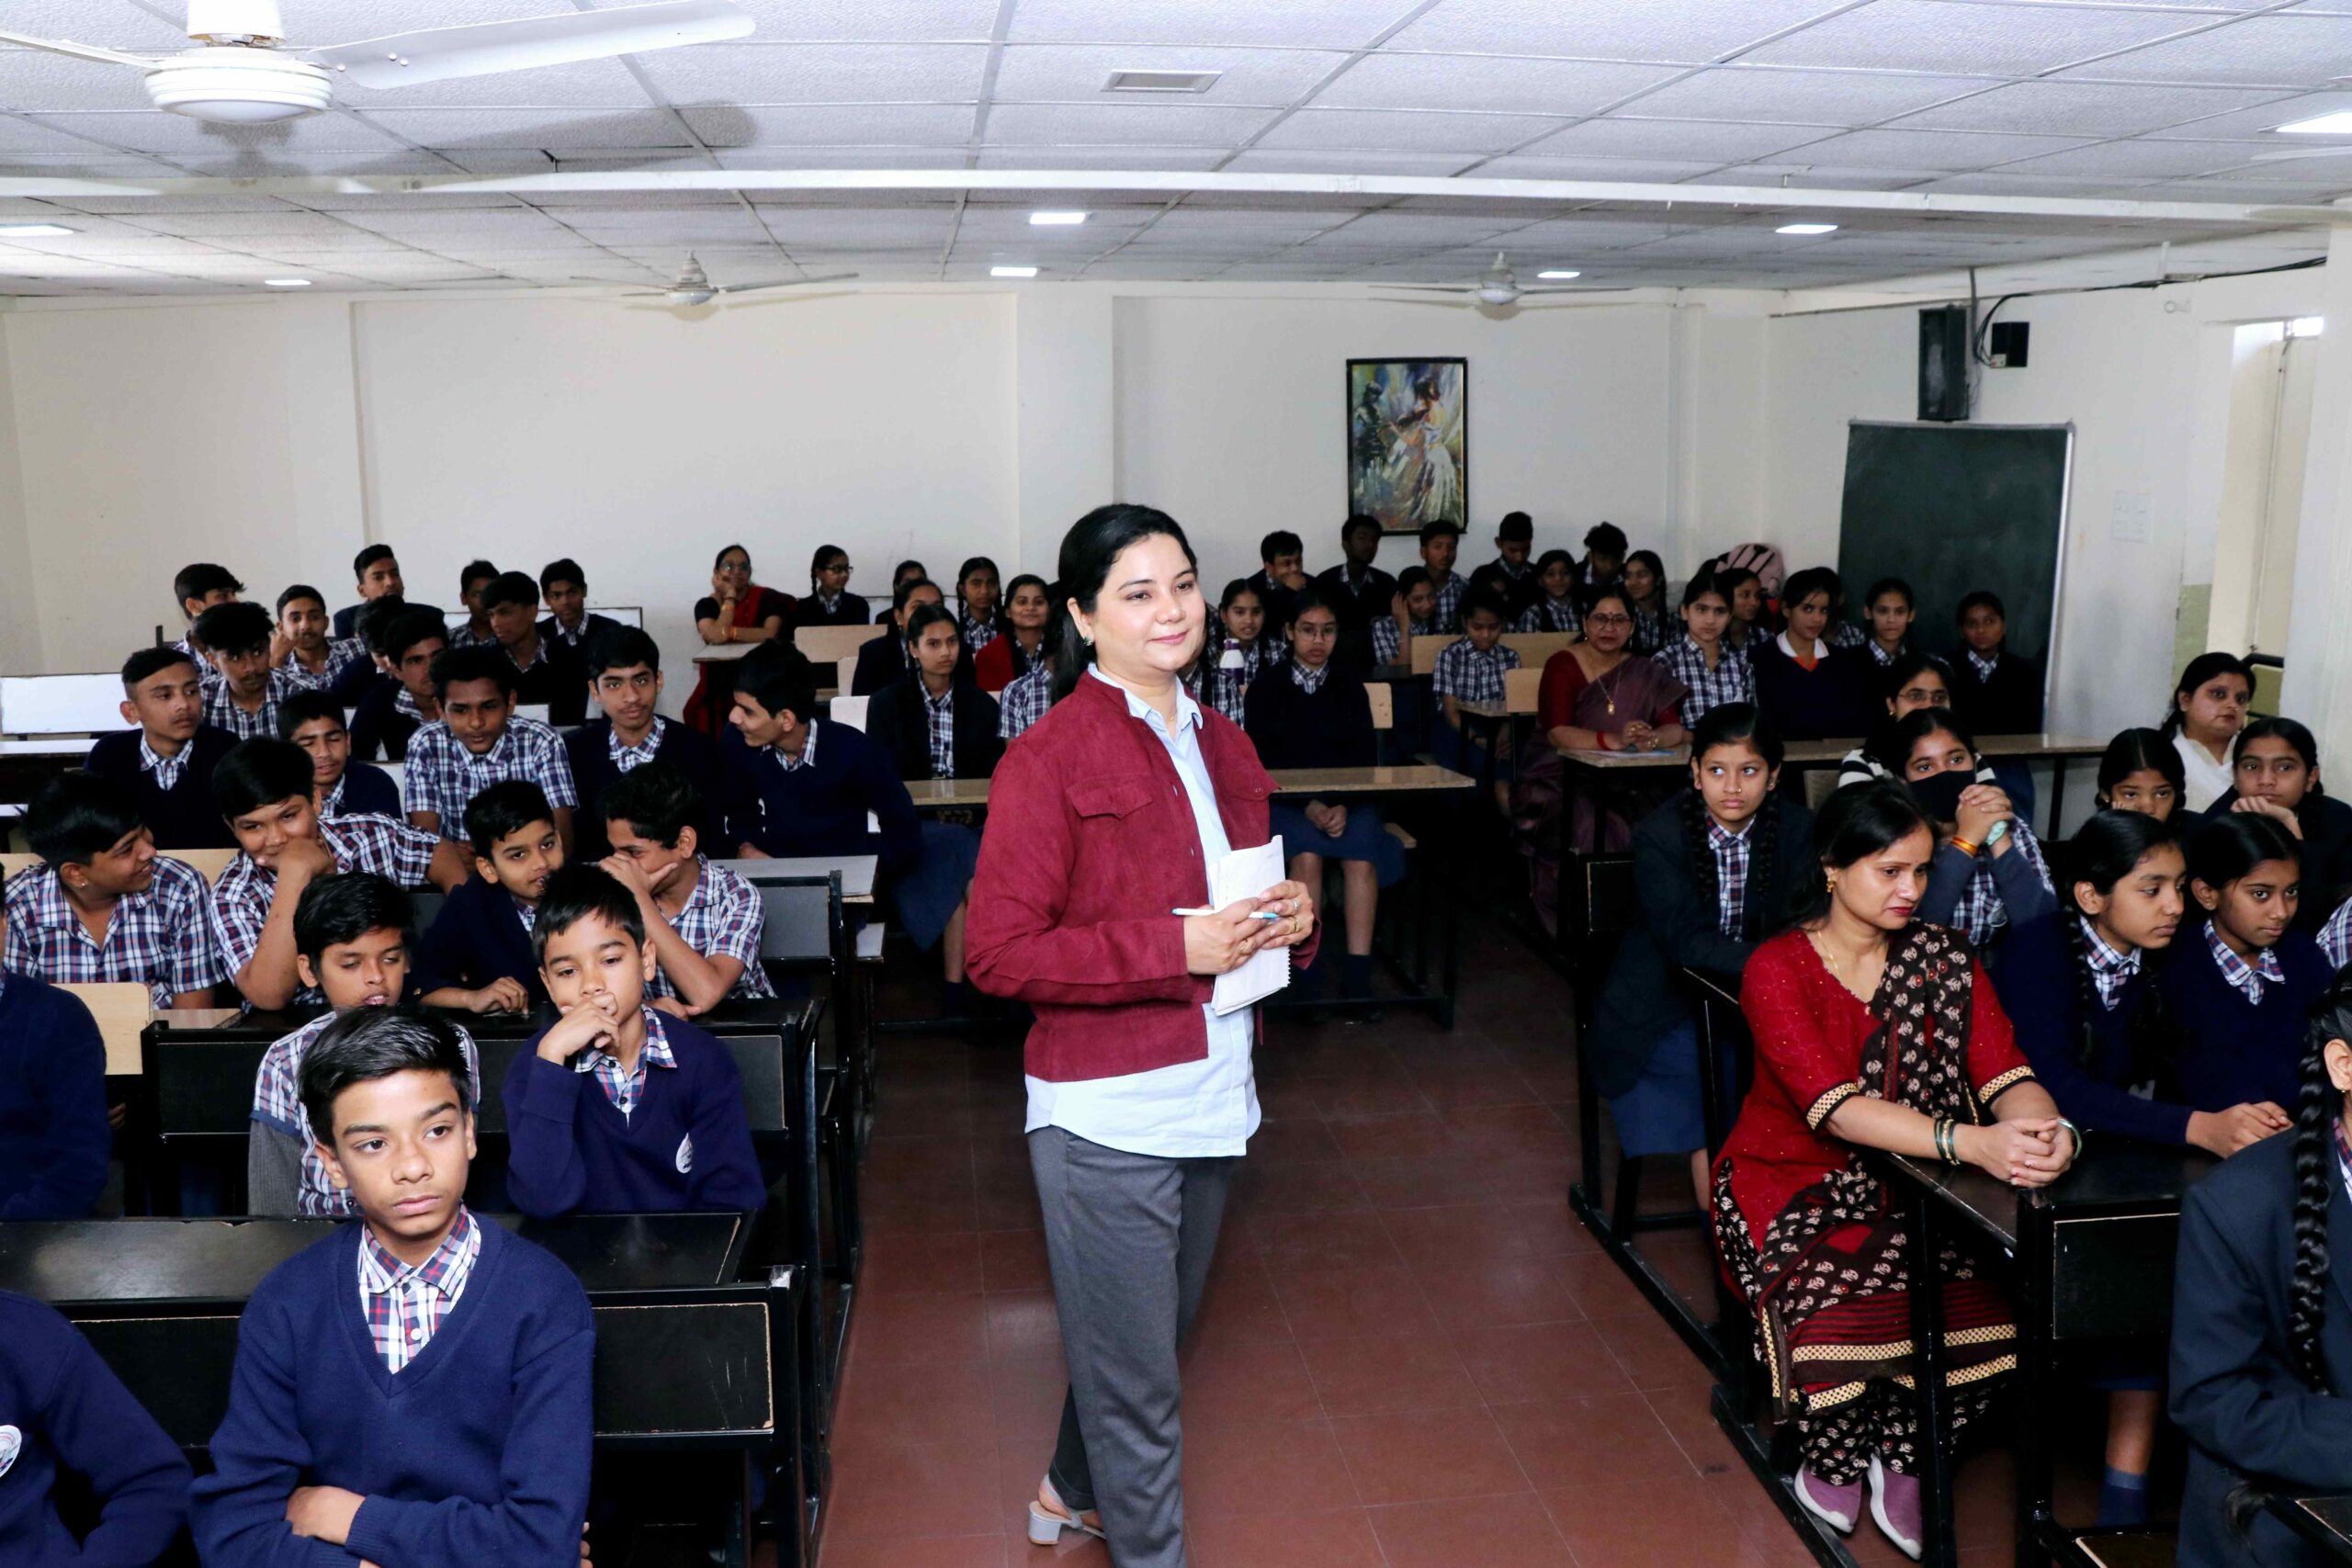 स्प्रिचुअल गाइड देवयानी हाड़ा ने हैंडलिंग एग्जाम स्ट्रेस पर की चर्चा, इंदौर में बच्चो को सिखाया फेलियर एक्सेप्ट करना